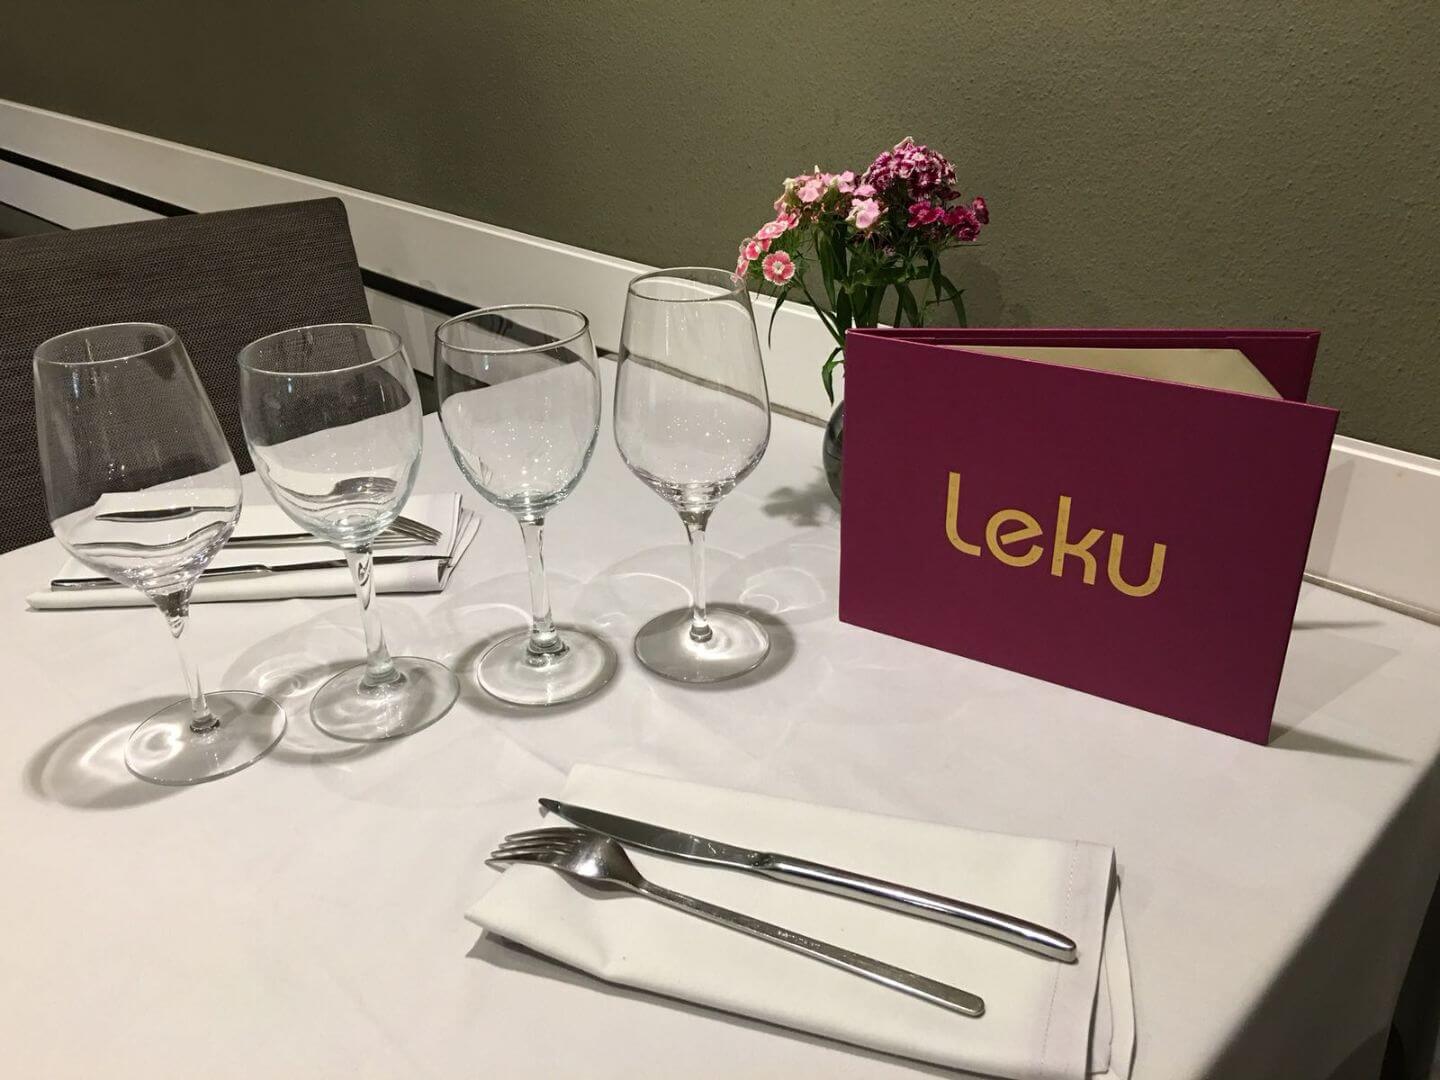 Restaurant Leku